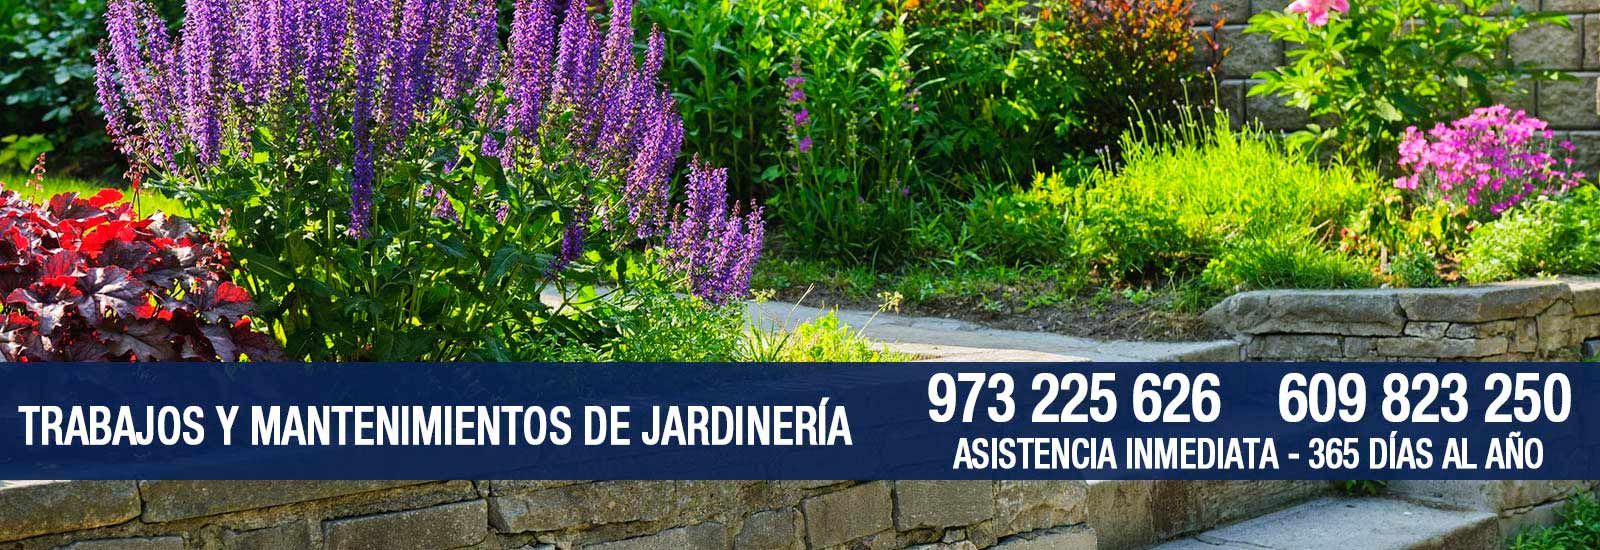 Multiservicios Abacel banner trabajos y mantenimientos de jardinería